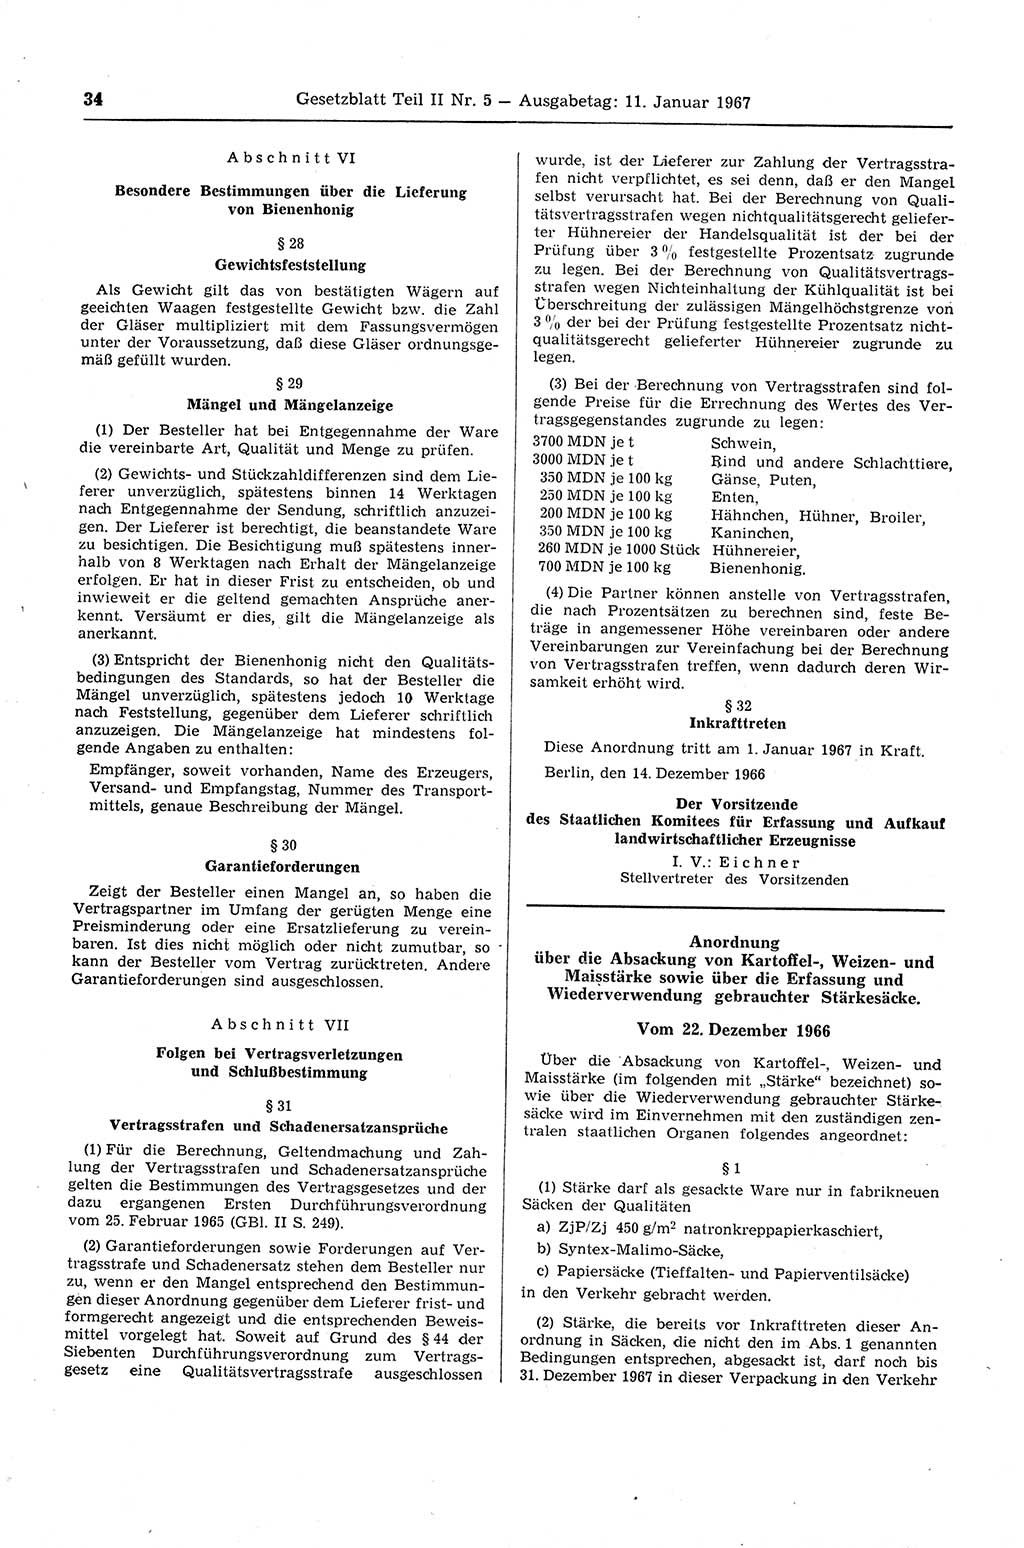 Gesetzblatt (GBl.) der Deutschen Demokratischen Republik (DDR) Teil ⅠⅠ 1967, Seite 34 (GBl. DDR ⅠⅠ 1967, S. 34)